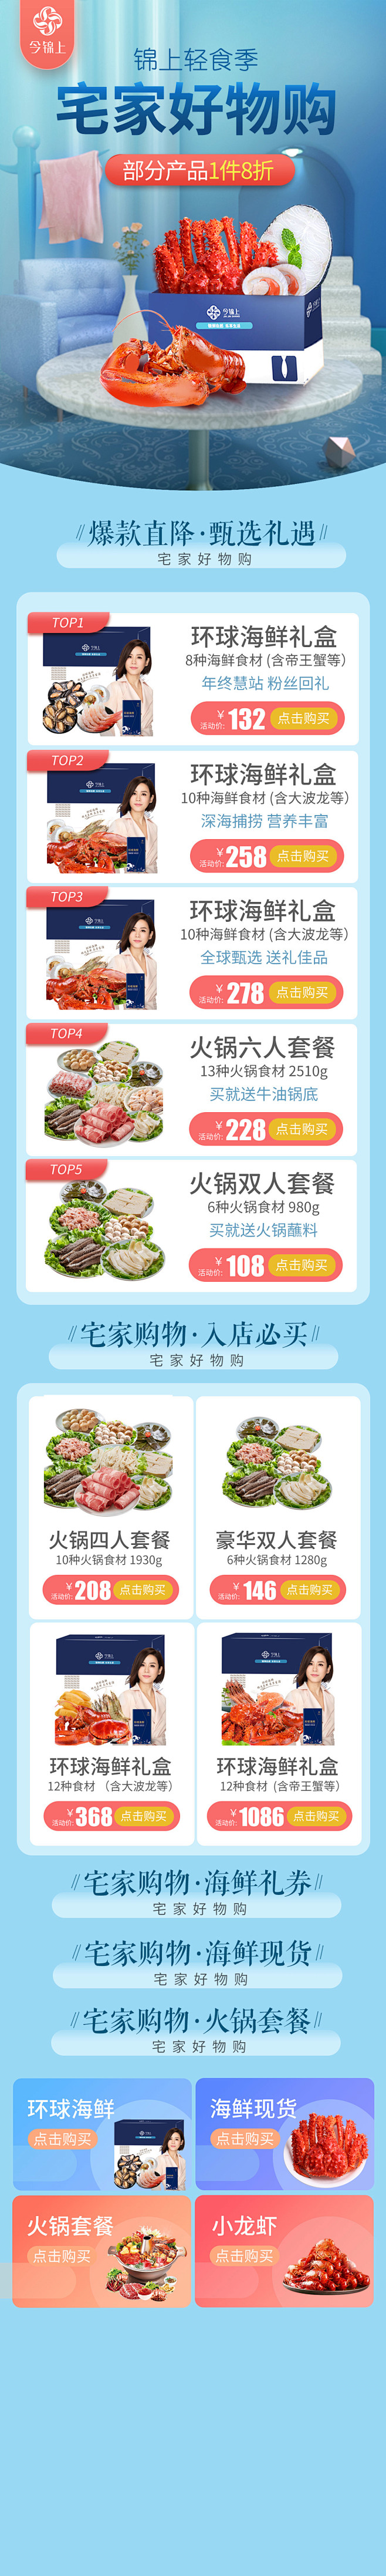 宅家好物购 轻食海鲜生鲜H5 app端